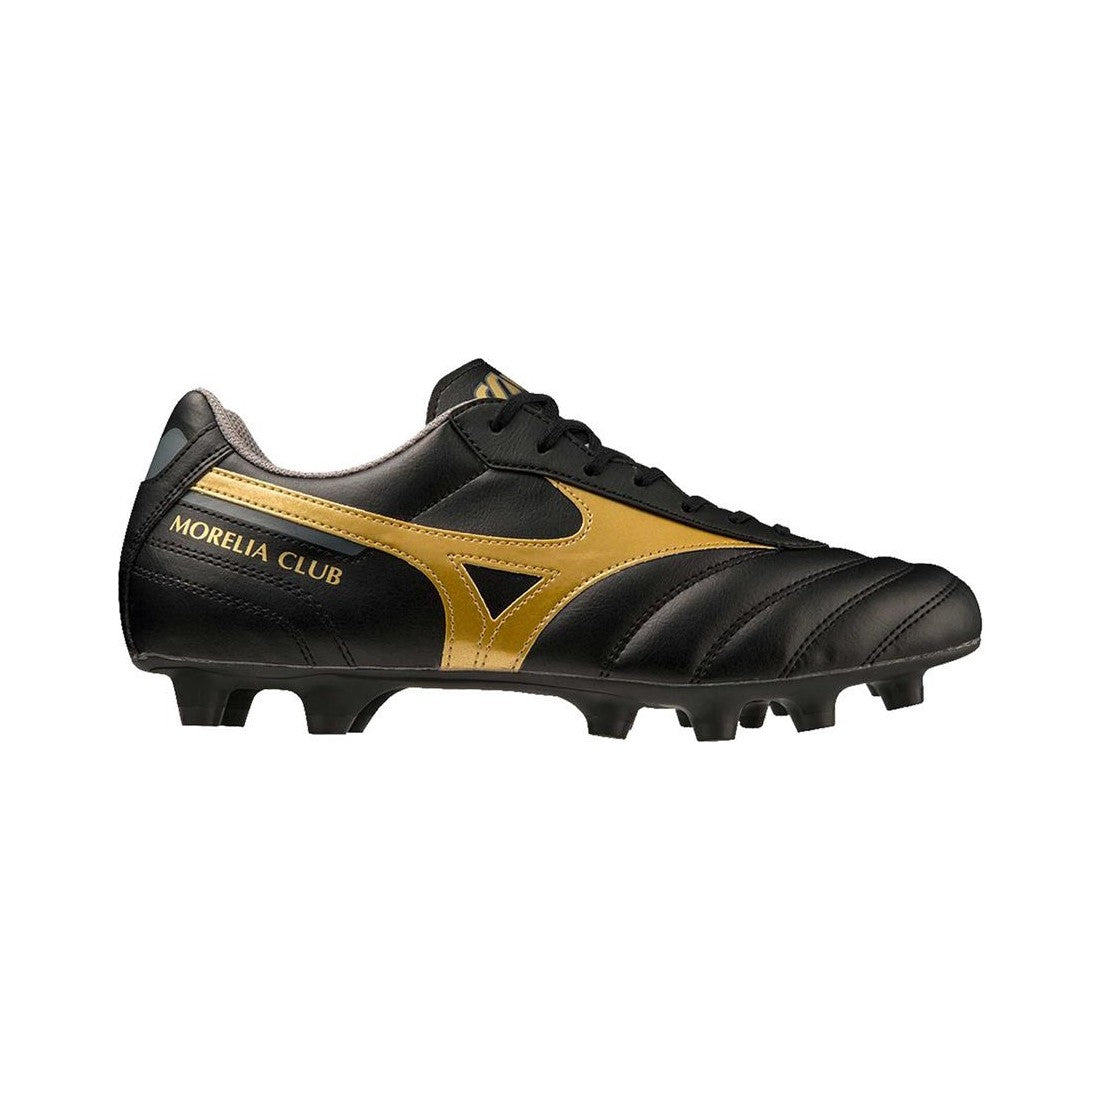 Mizuno scarpa da calcio da uomo Morelia II Club P1GA231650 nero-oro